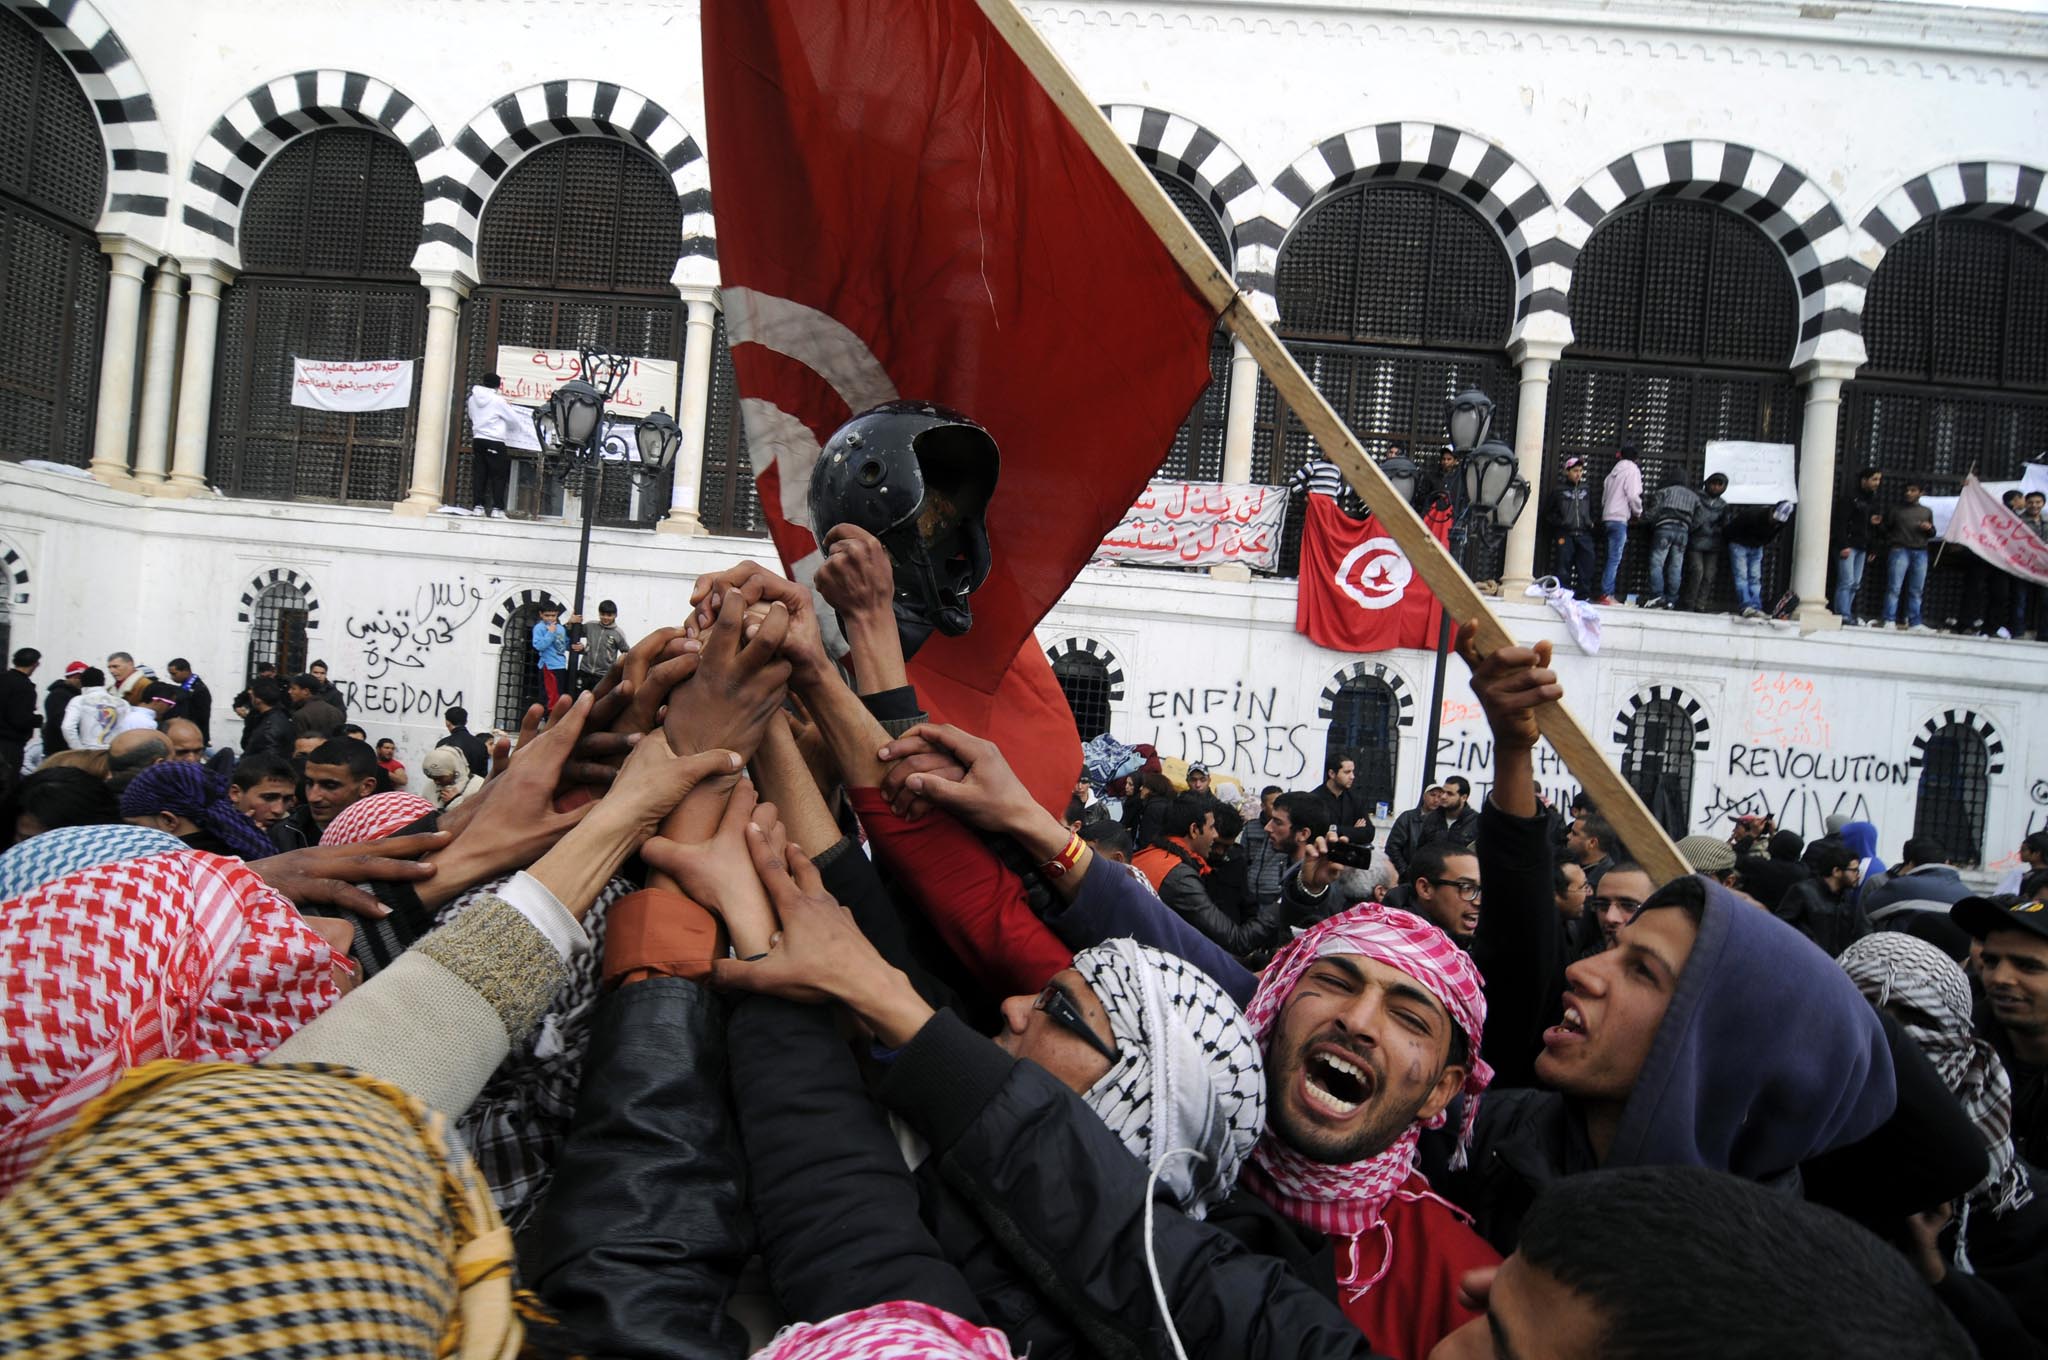 Tunis casbah revolution